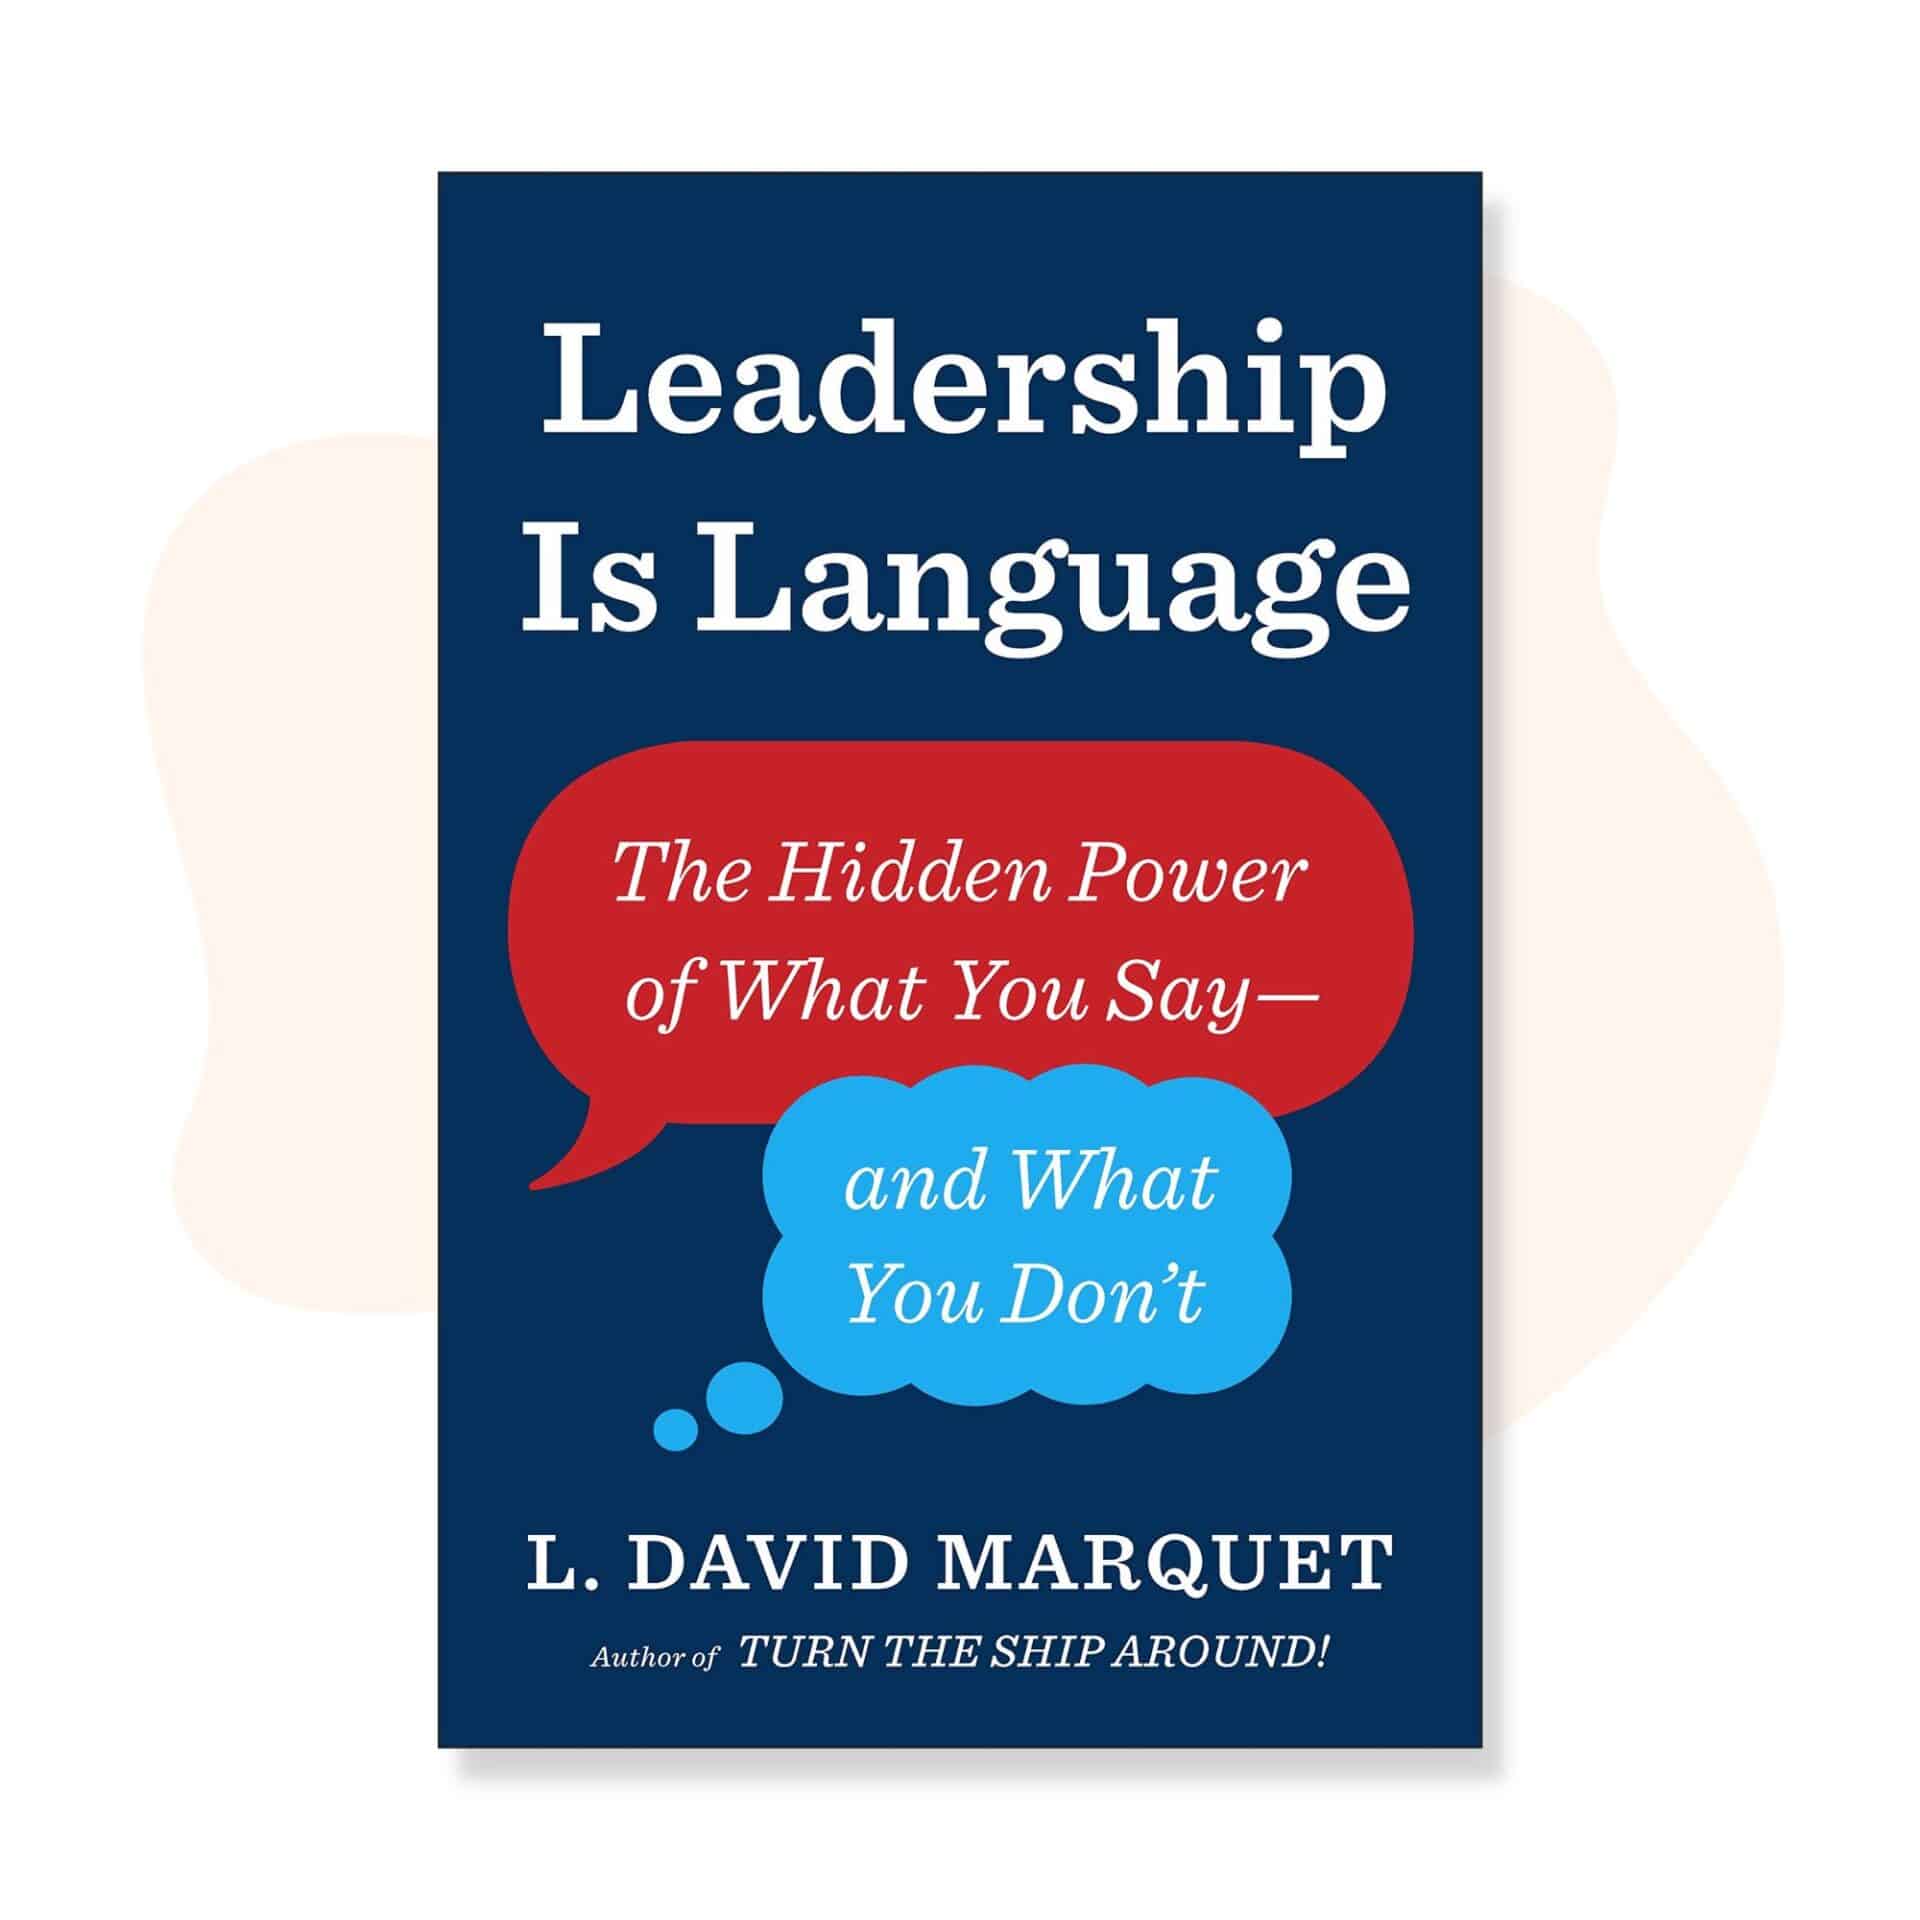 Le leadership est un langage